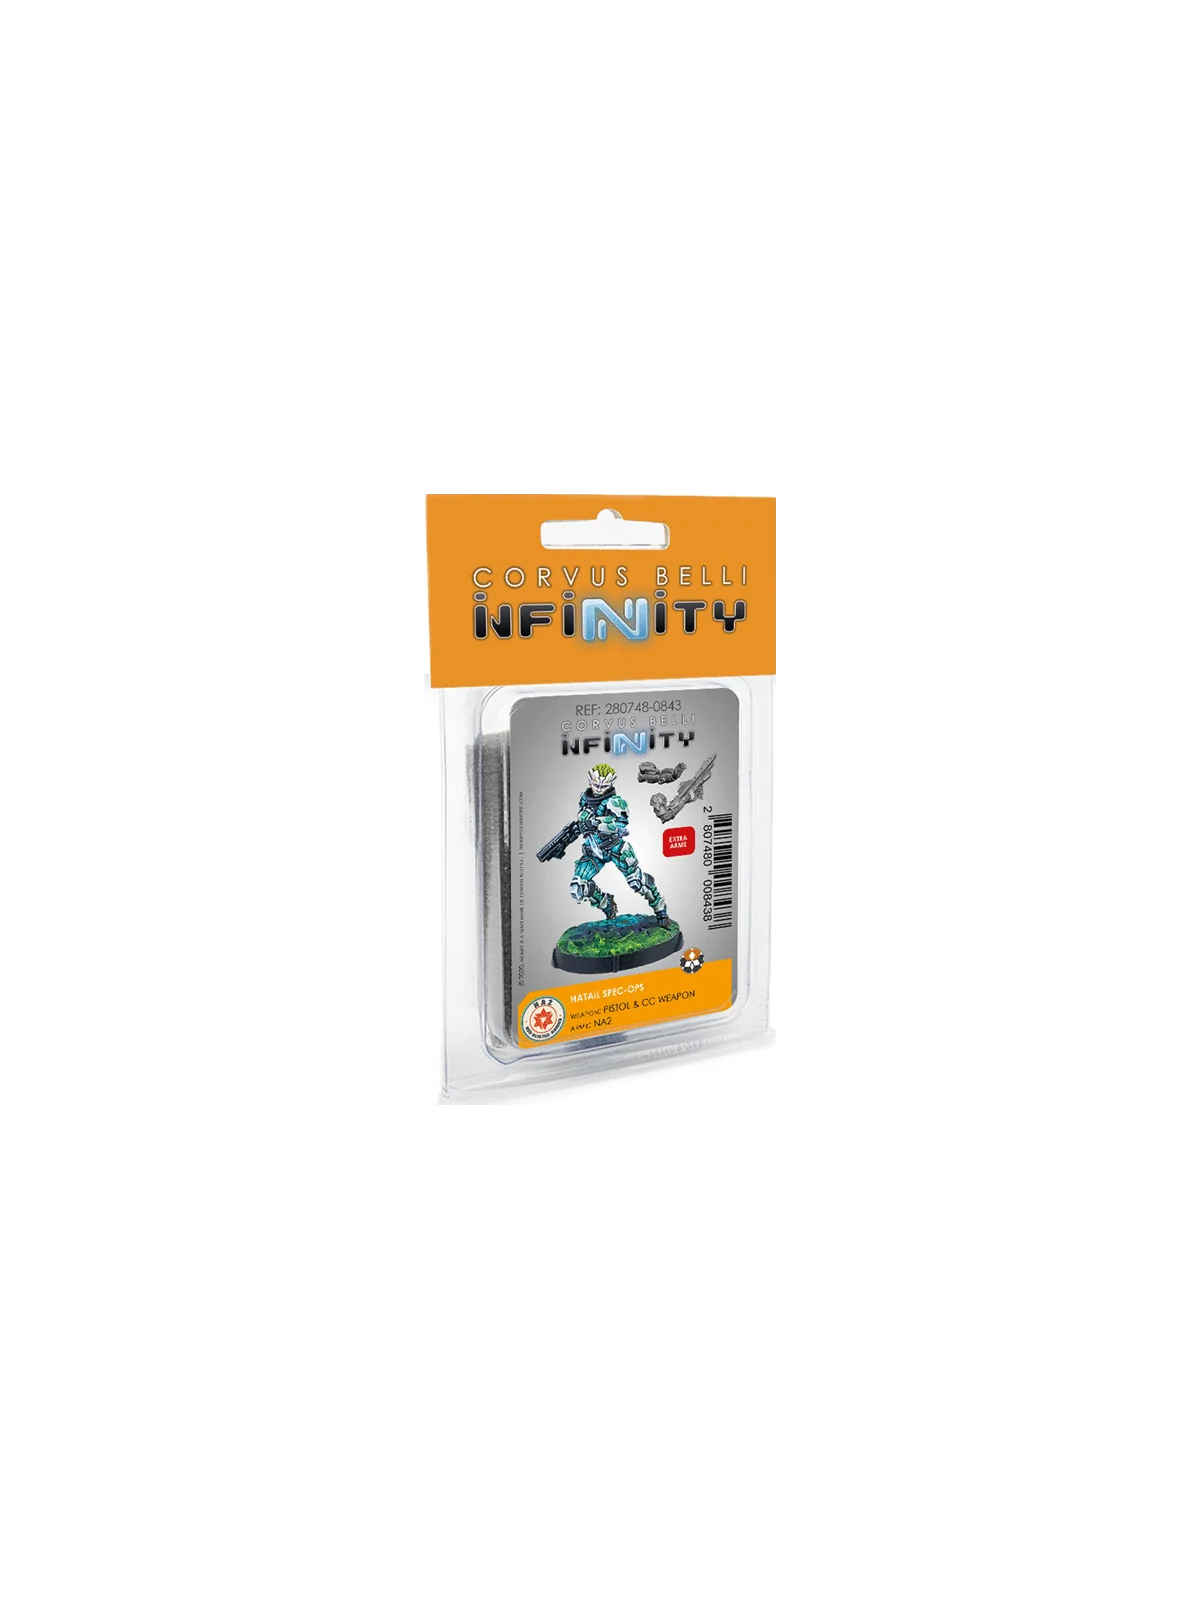 Comprar Infinity: Hatail Spec-Ops barato al mejor precio 15,25 € de Co